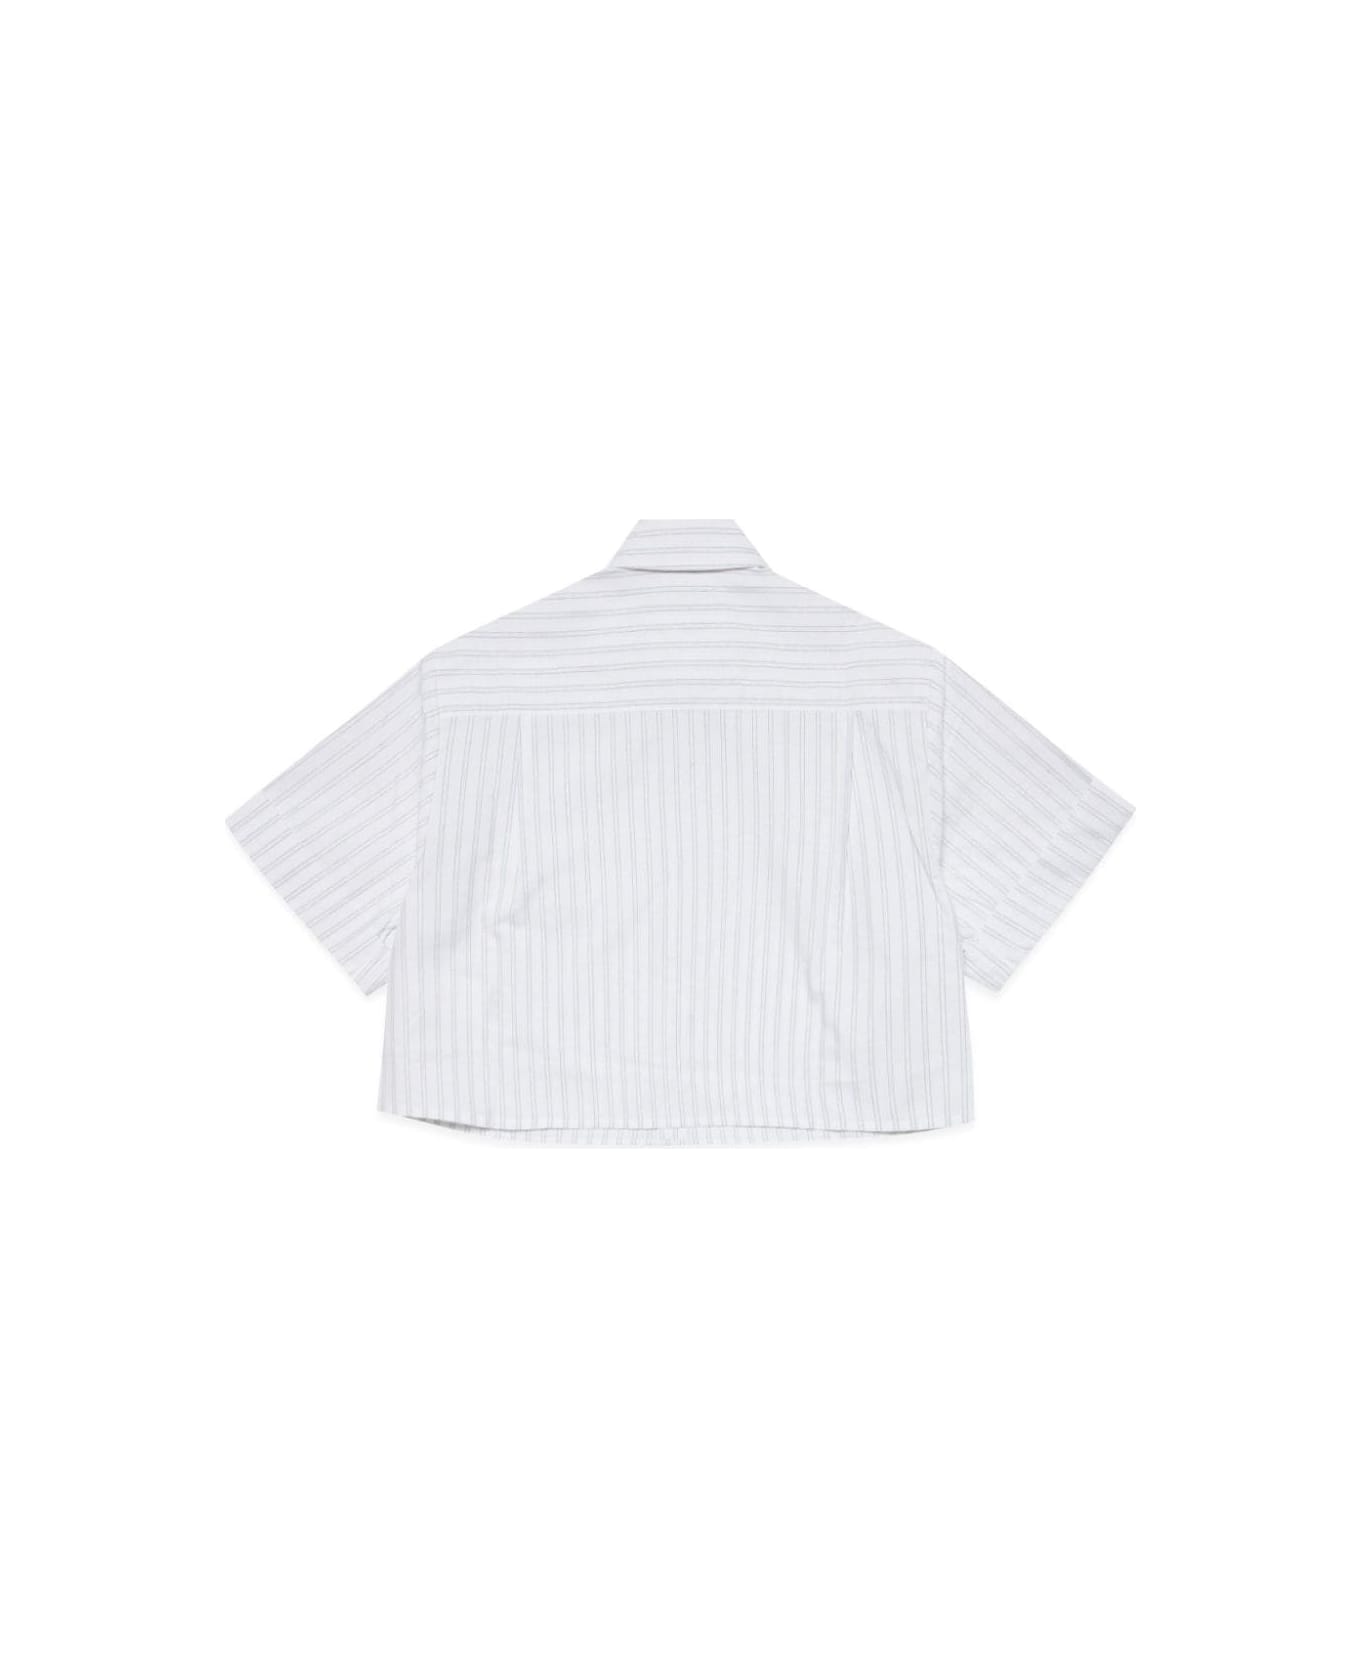 MM6 Maison Margiela Camicia A Righe Con Stampa - White